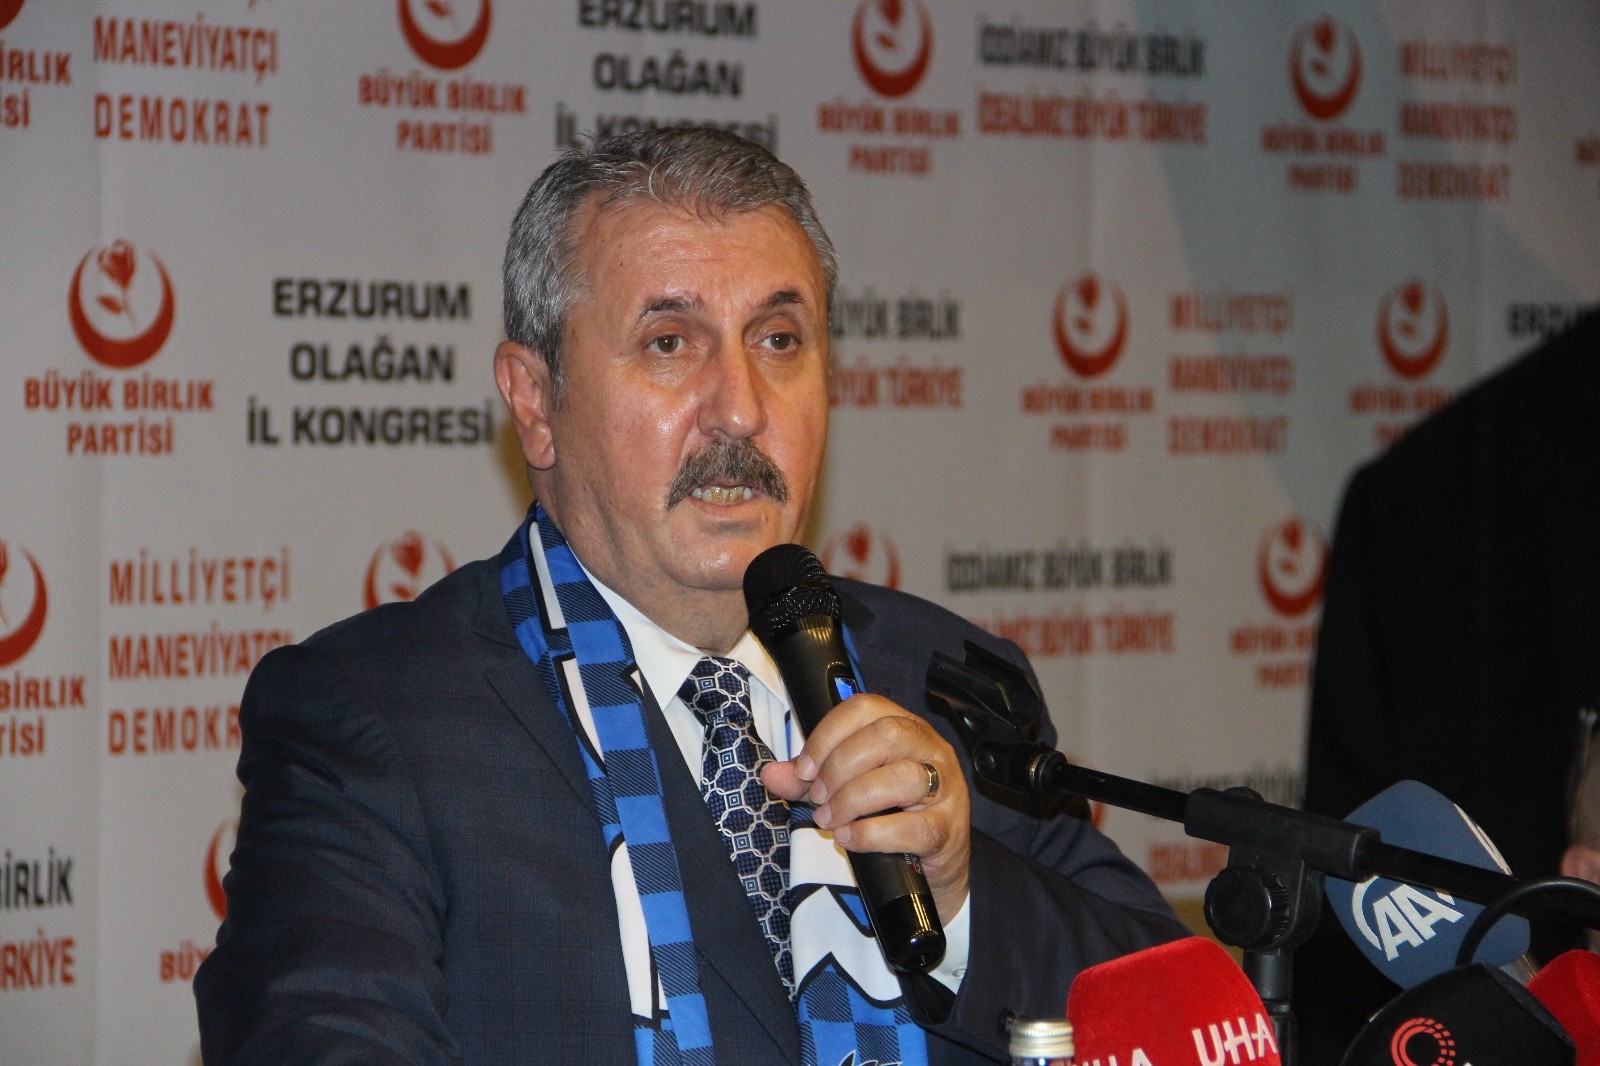 BBP Genel Başkanı Destici: “Akşener’den hem Türk milleti adına hem de Fatih Sultan Mehmet’in manevi şahsiyetinden bir özür bekliyoruz”